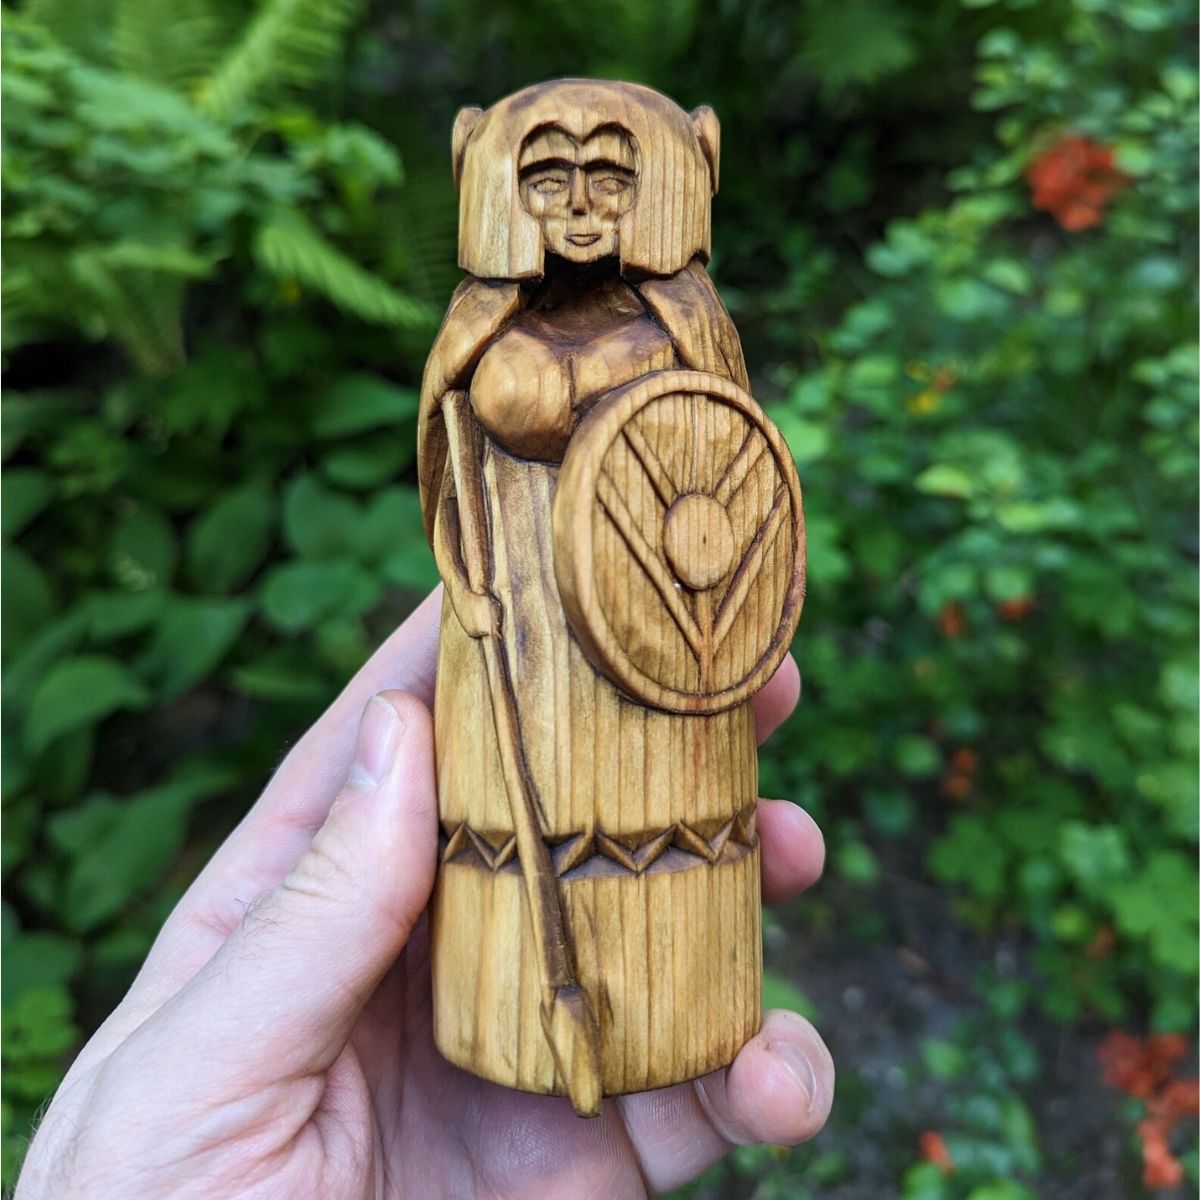 Valkyrie wooden figurine   